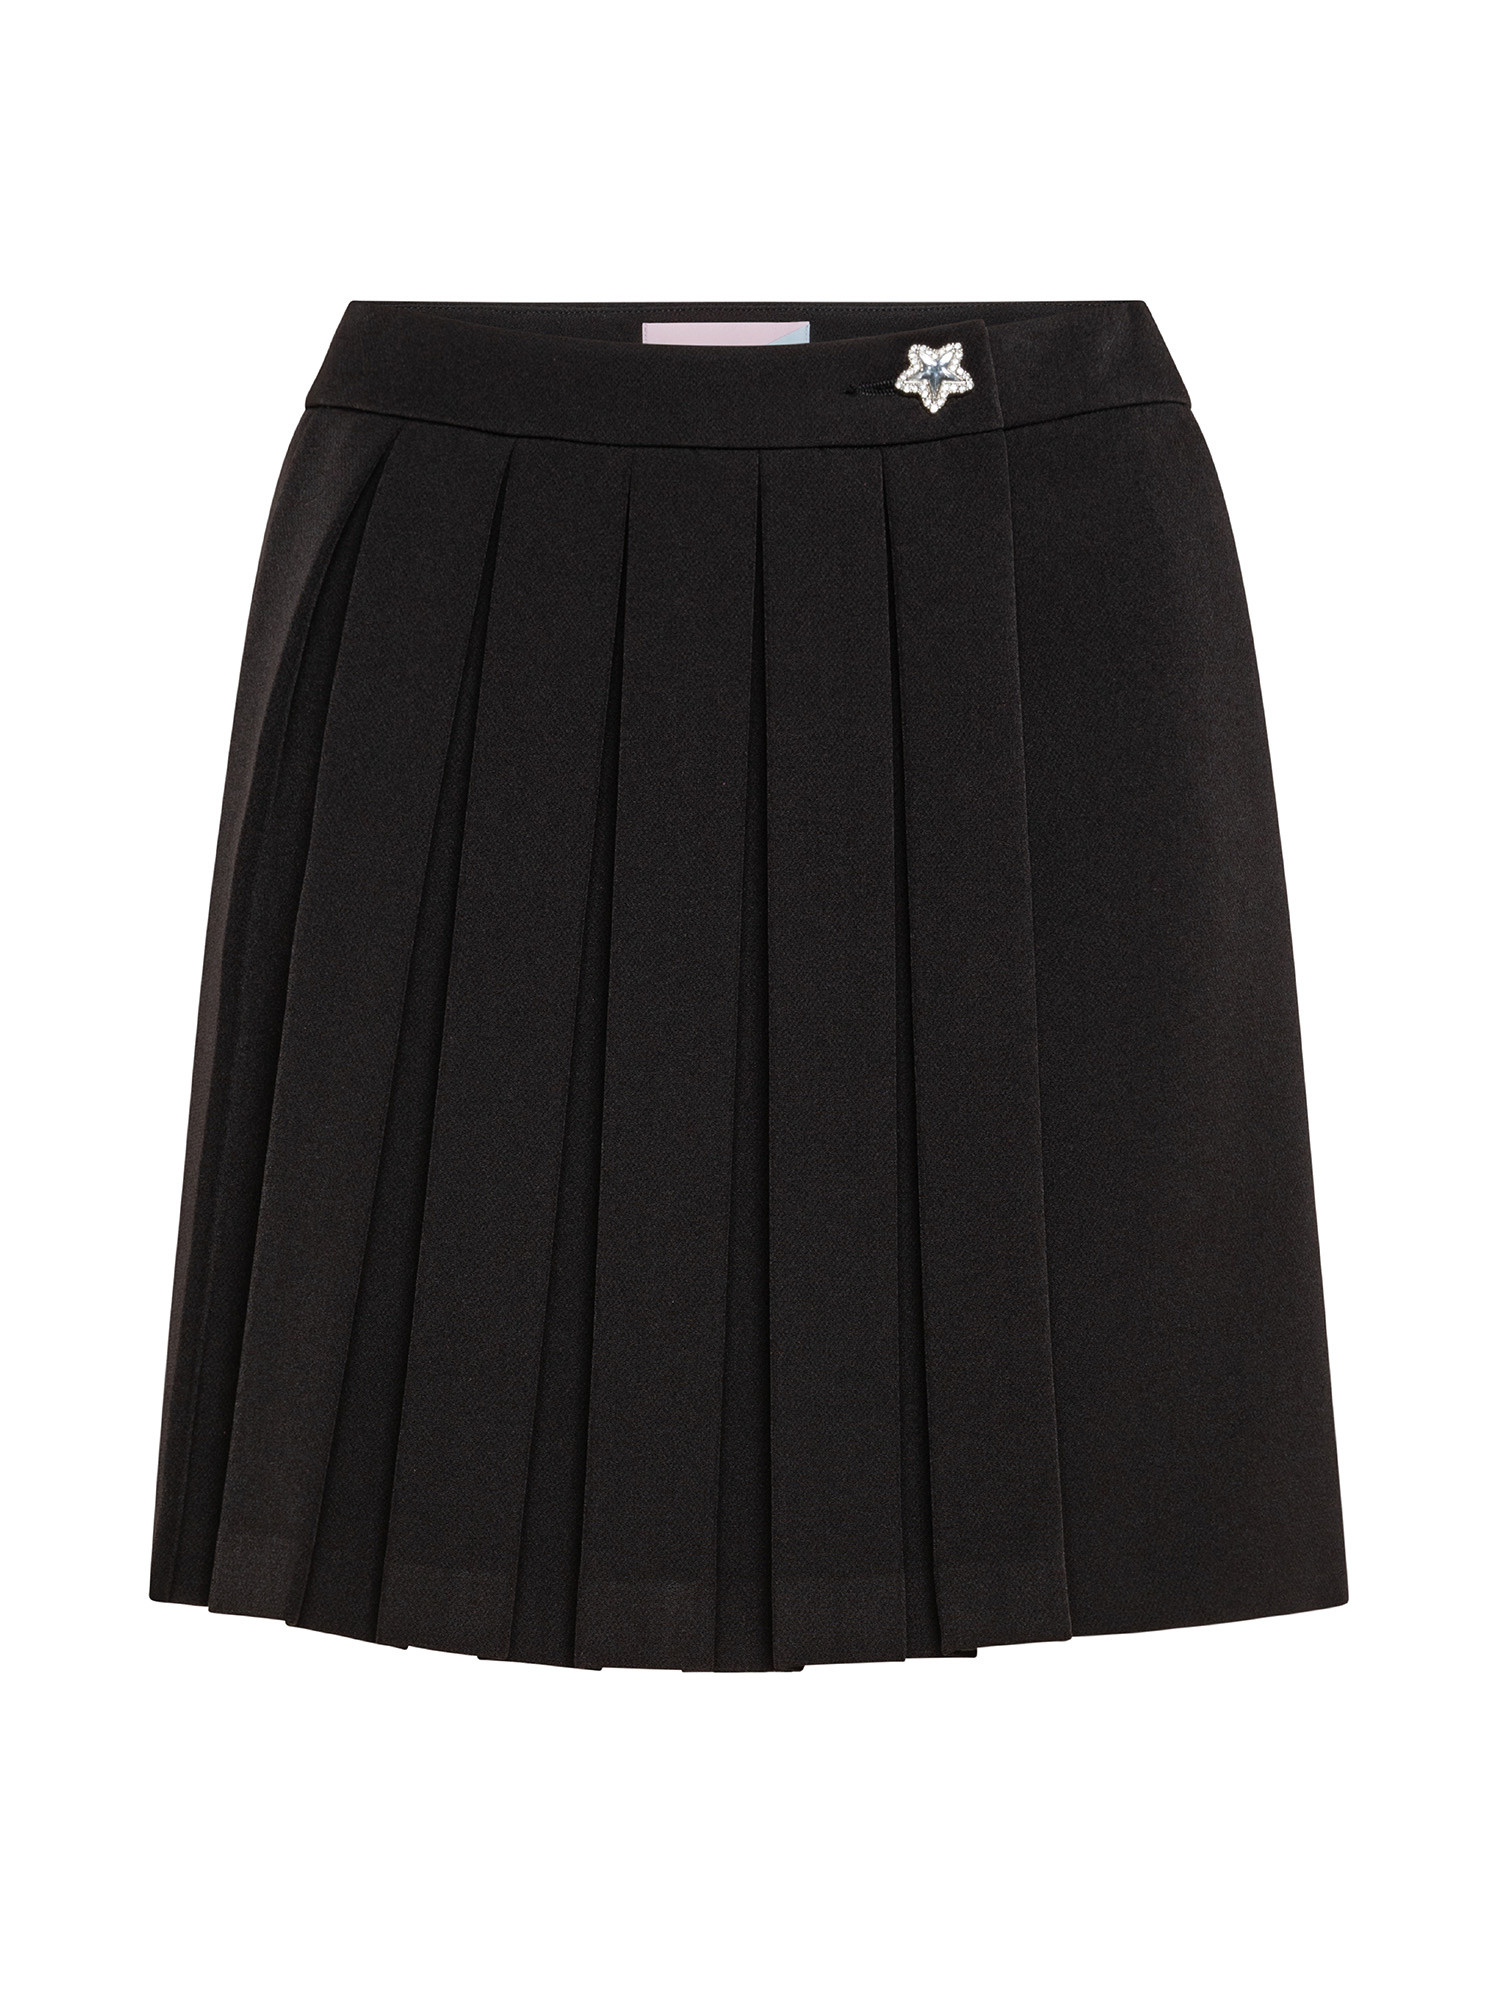 Skirt, Black, large image number 0